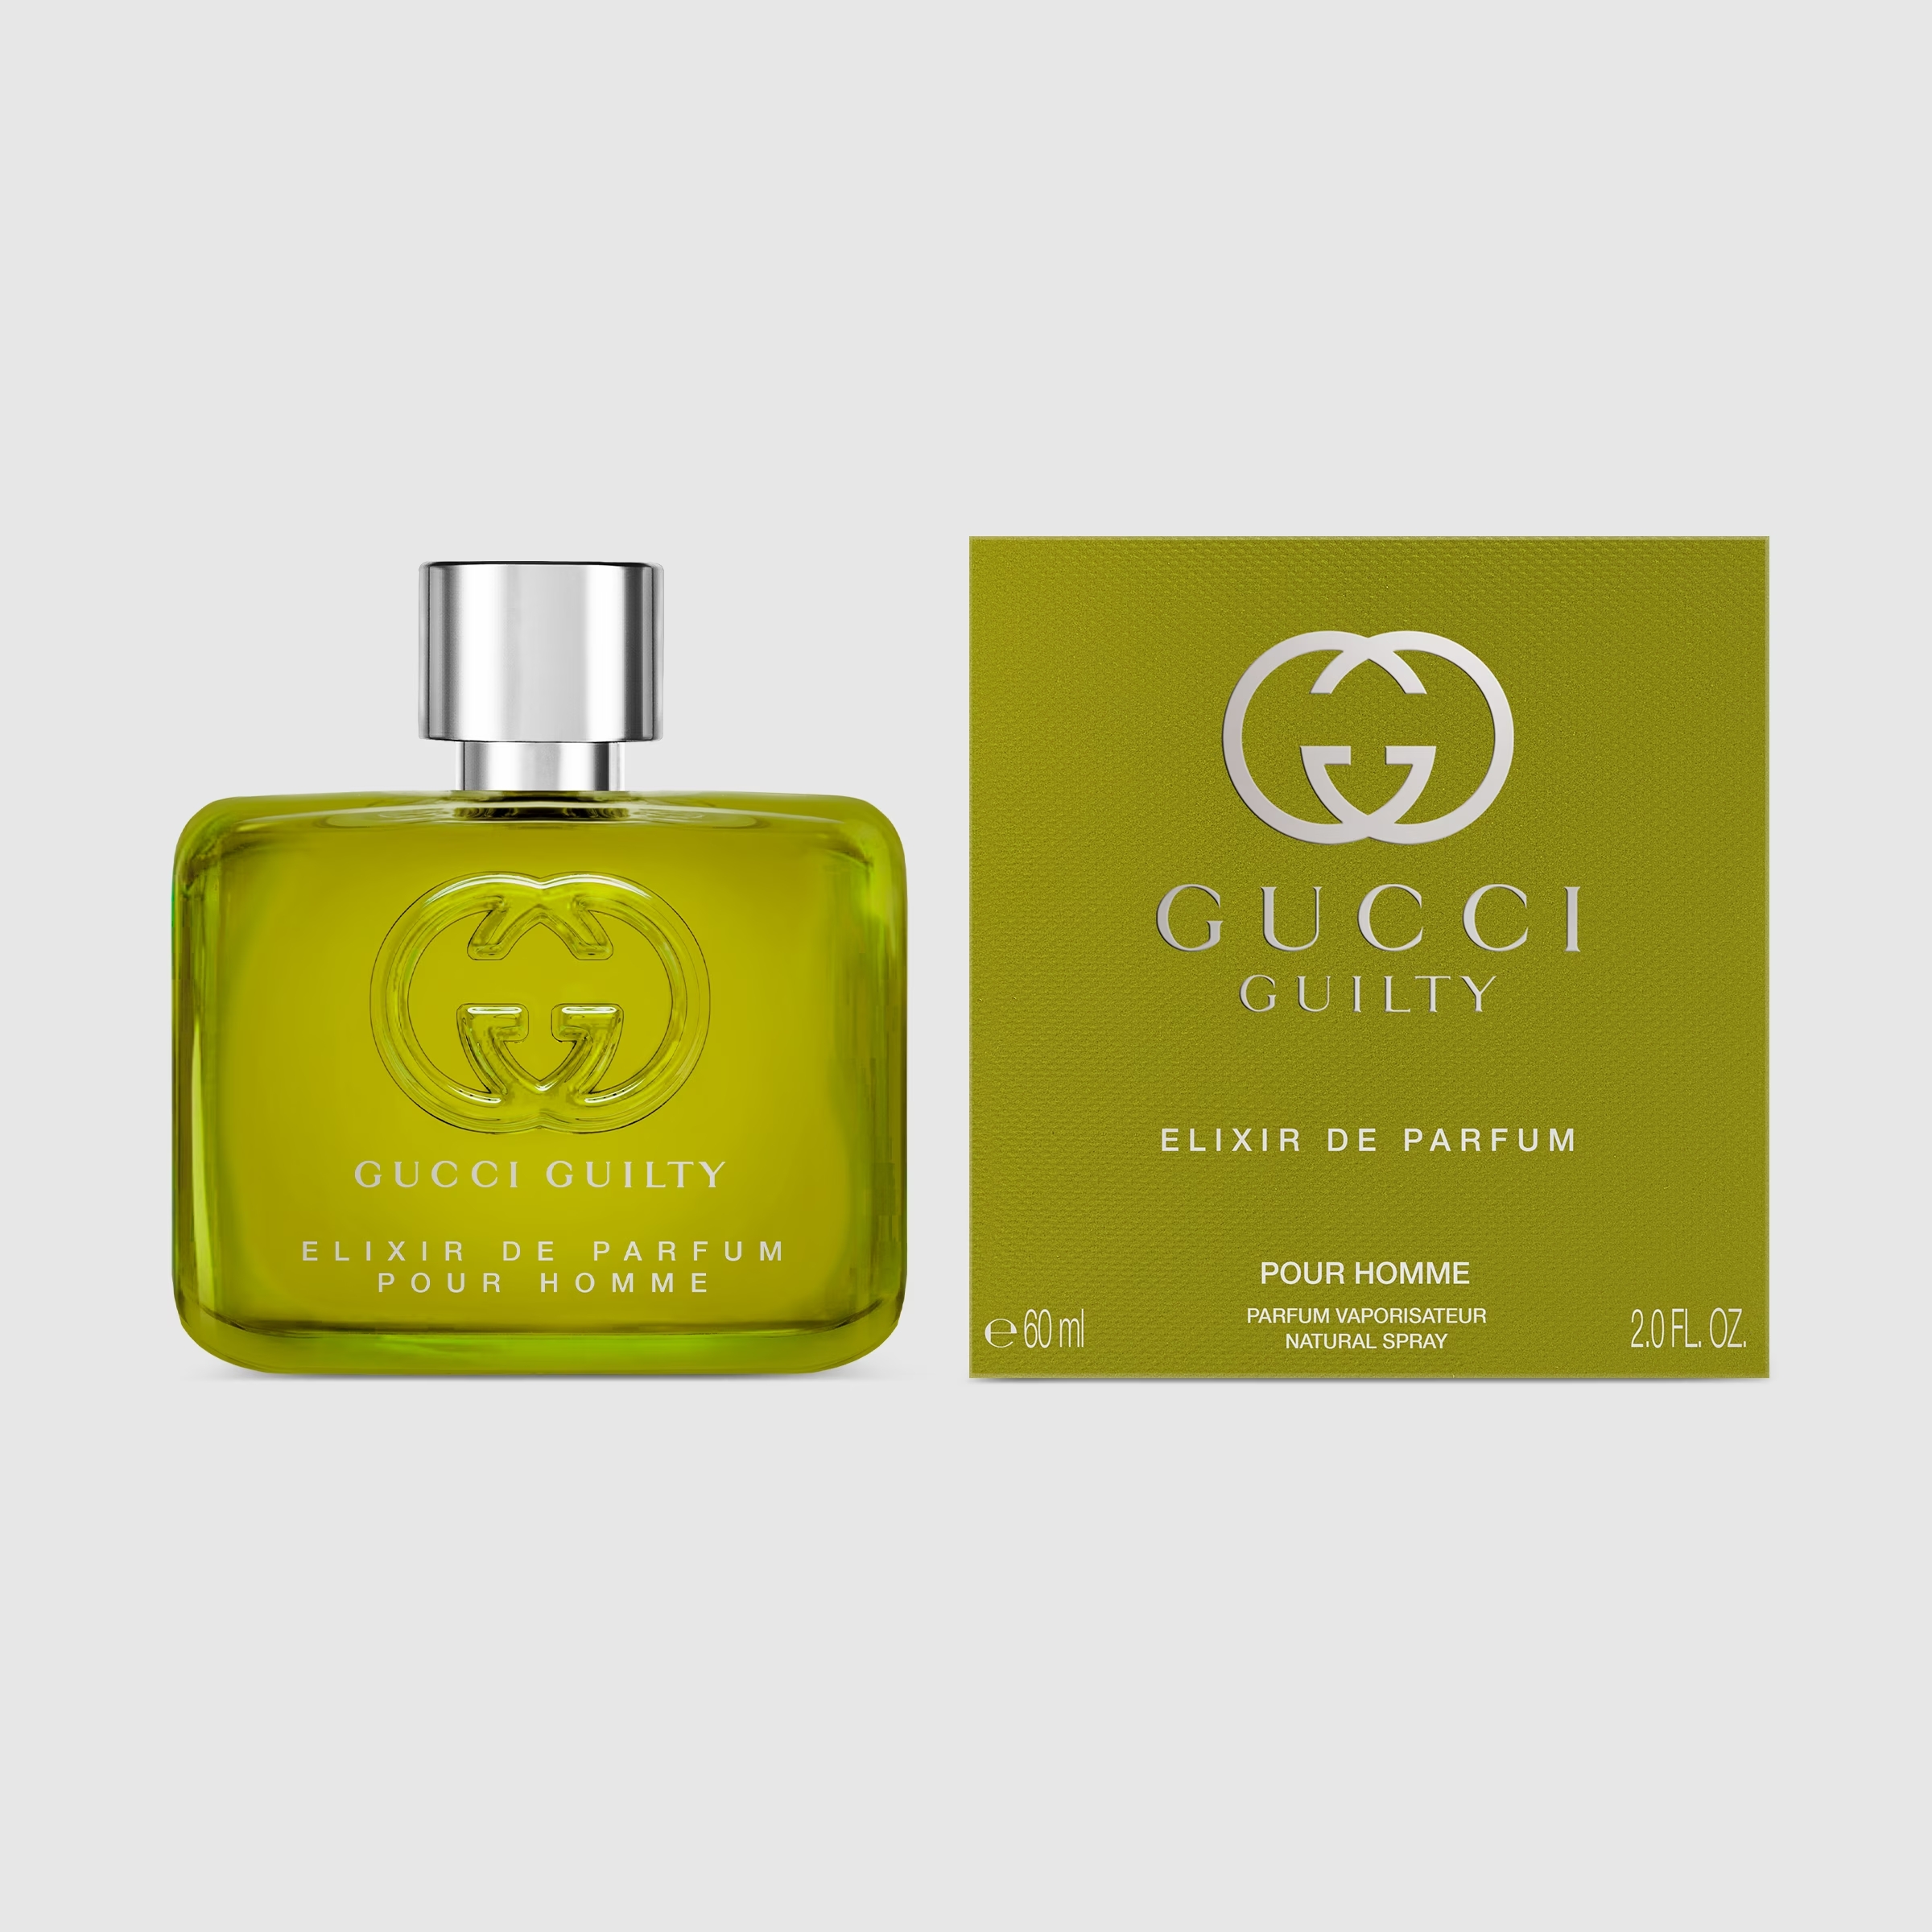 Image of Gucci Guilty - Elixir de Parfum pour Homme 60 ml